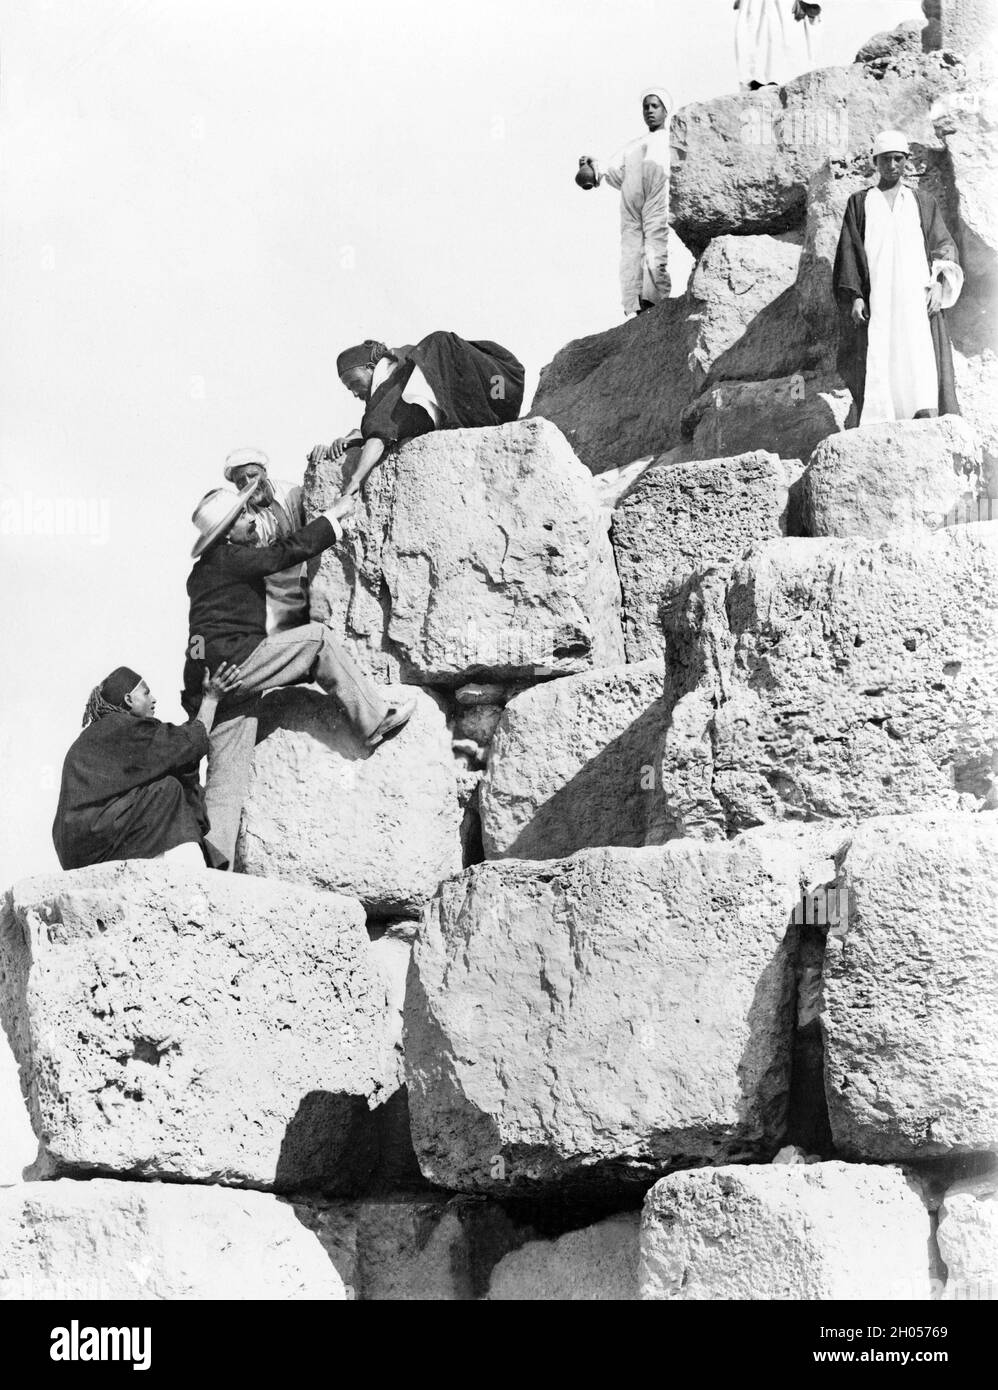 Ein Vintage-Foto aus der Zeit um 1880 von einem Touristen, der von lokalen Ägyptern beim Aufstieg auf die große Pyramide von Gizeh unterstützt wurde. Auch bekannt als die Pyramide von Khufu oder die Pyramide von Cheops. Das Besteigen der Pyramiden ist heute verboten. Stockfoto